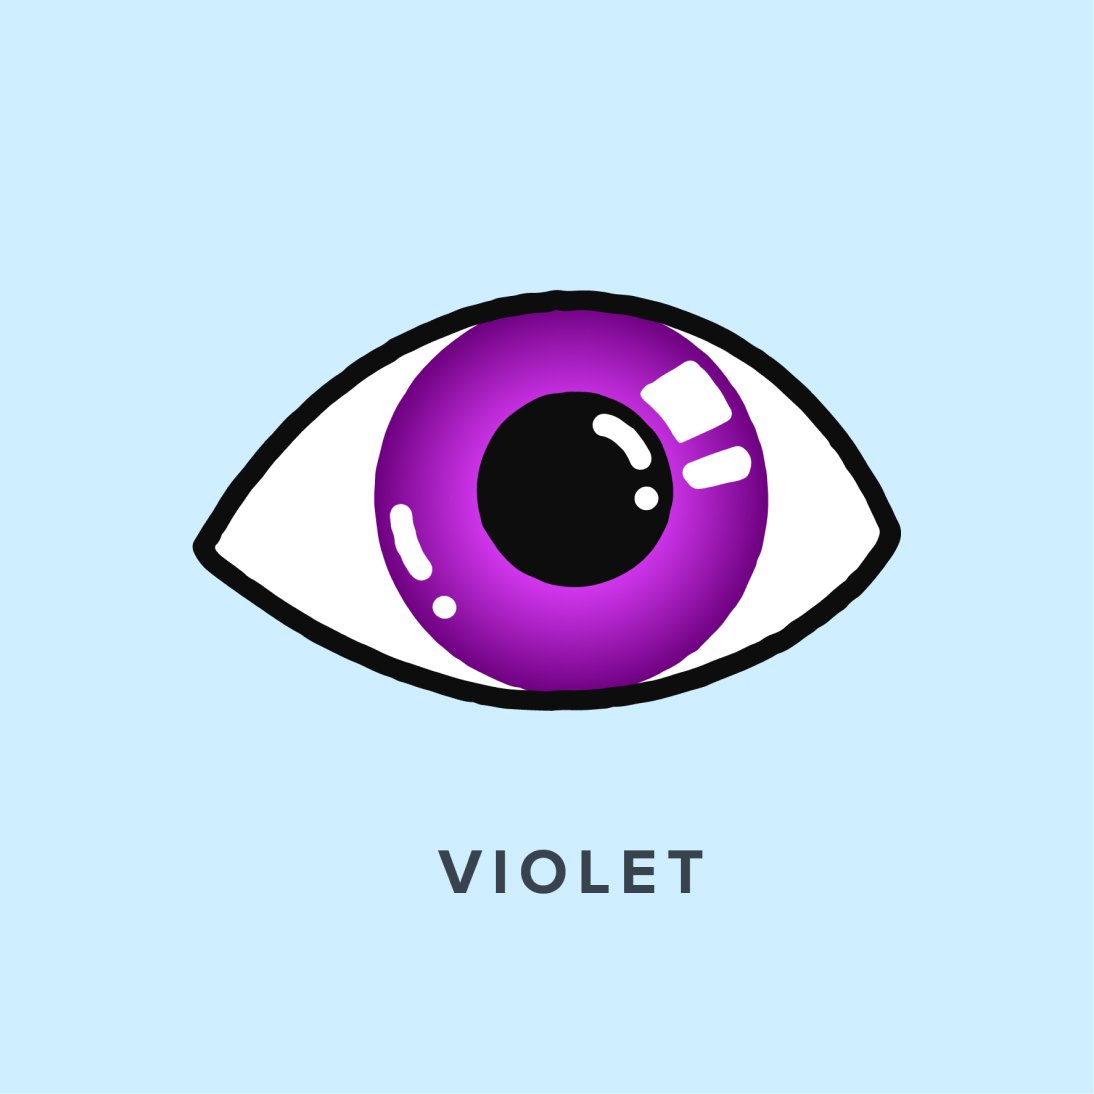 Illustration of a violet-colored eye